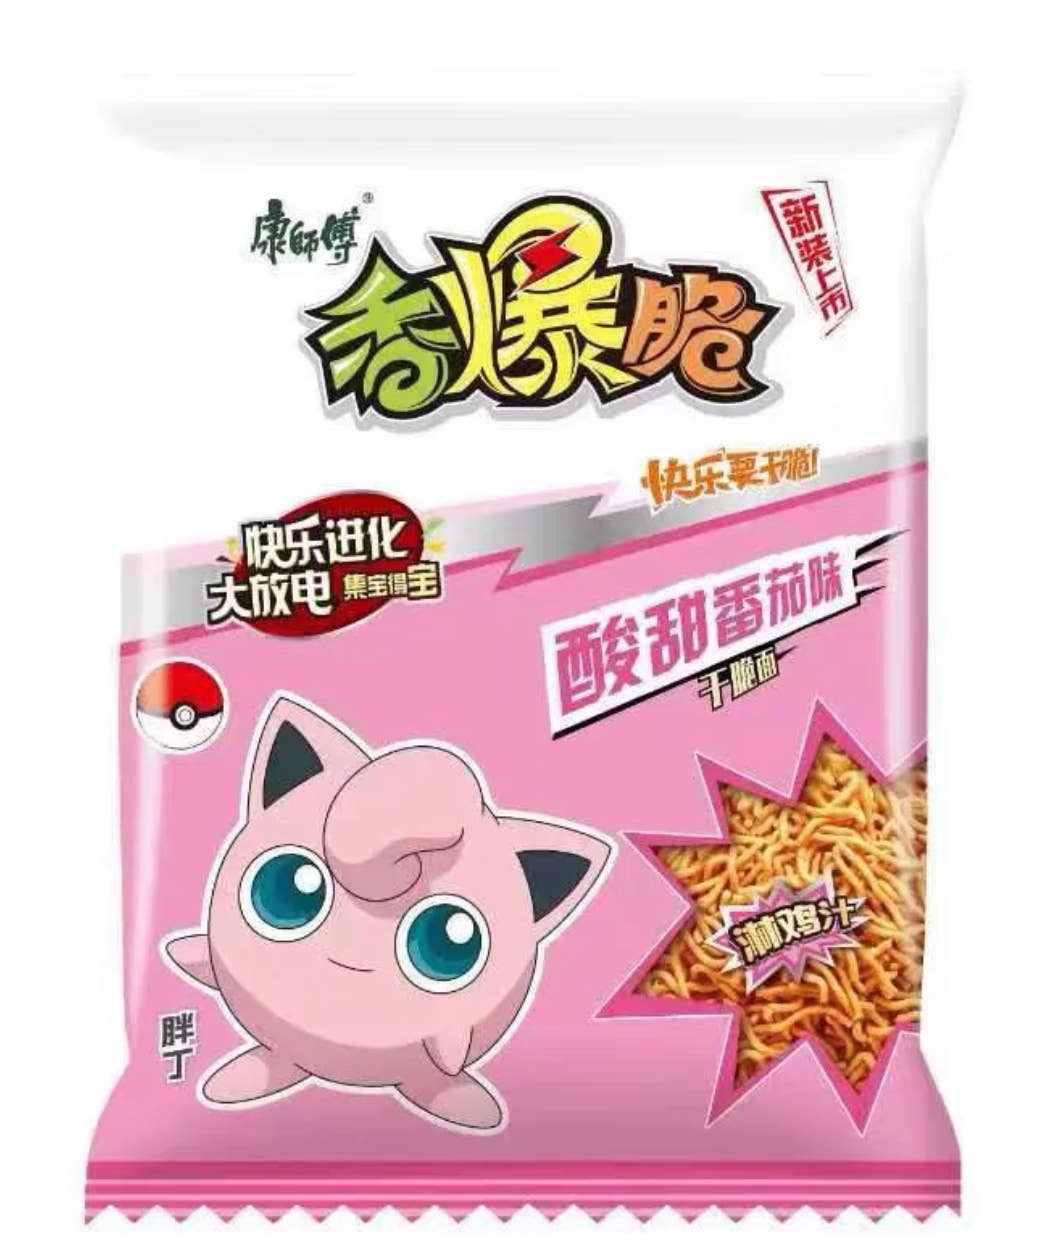 Pokémon Crispy Dry Instant Noodle Sweet Sour Tomato Flavor (33g) 4-Pack